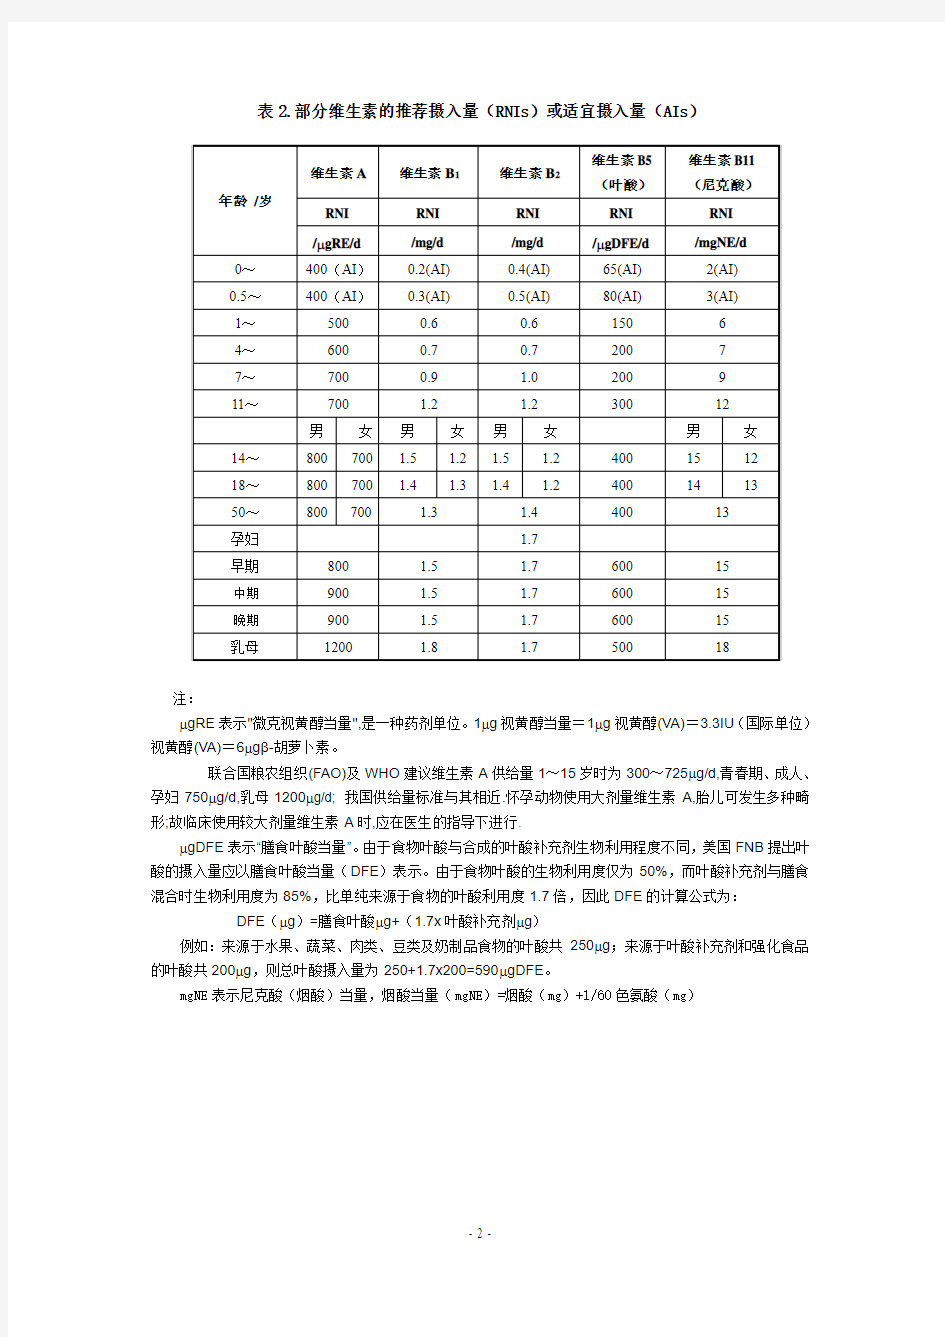 附件2：中国居民膳食营养参考摄入量